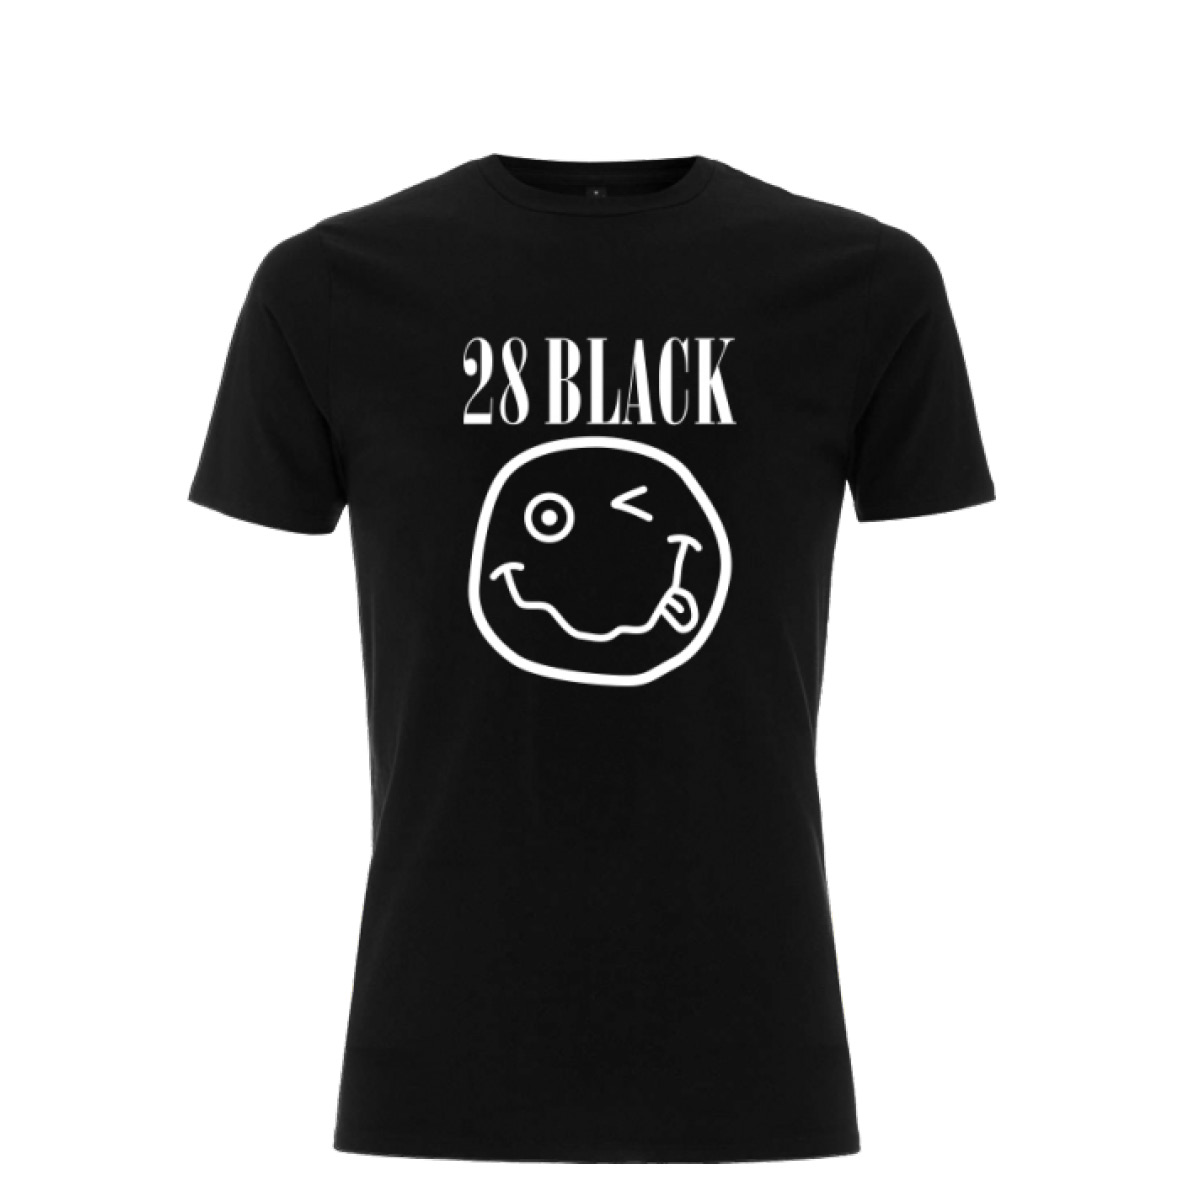 28 BLACK Band-Shirt…im Grunge-Style 